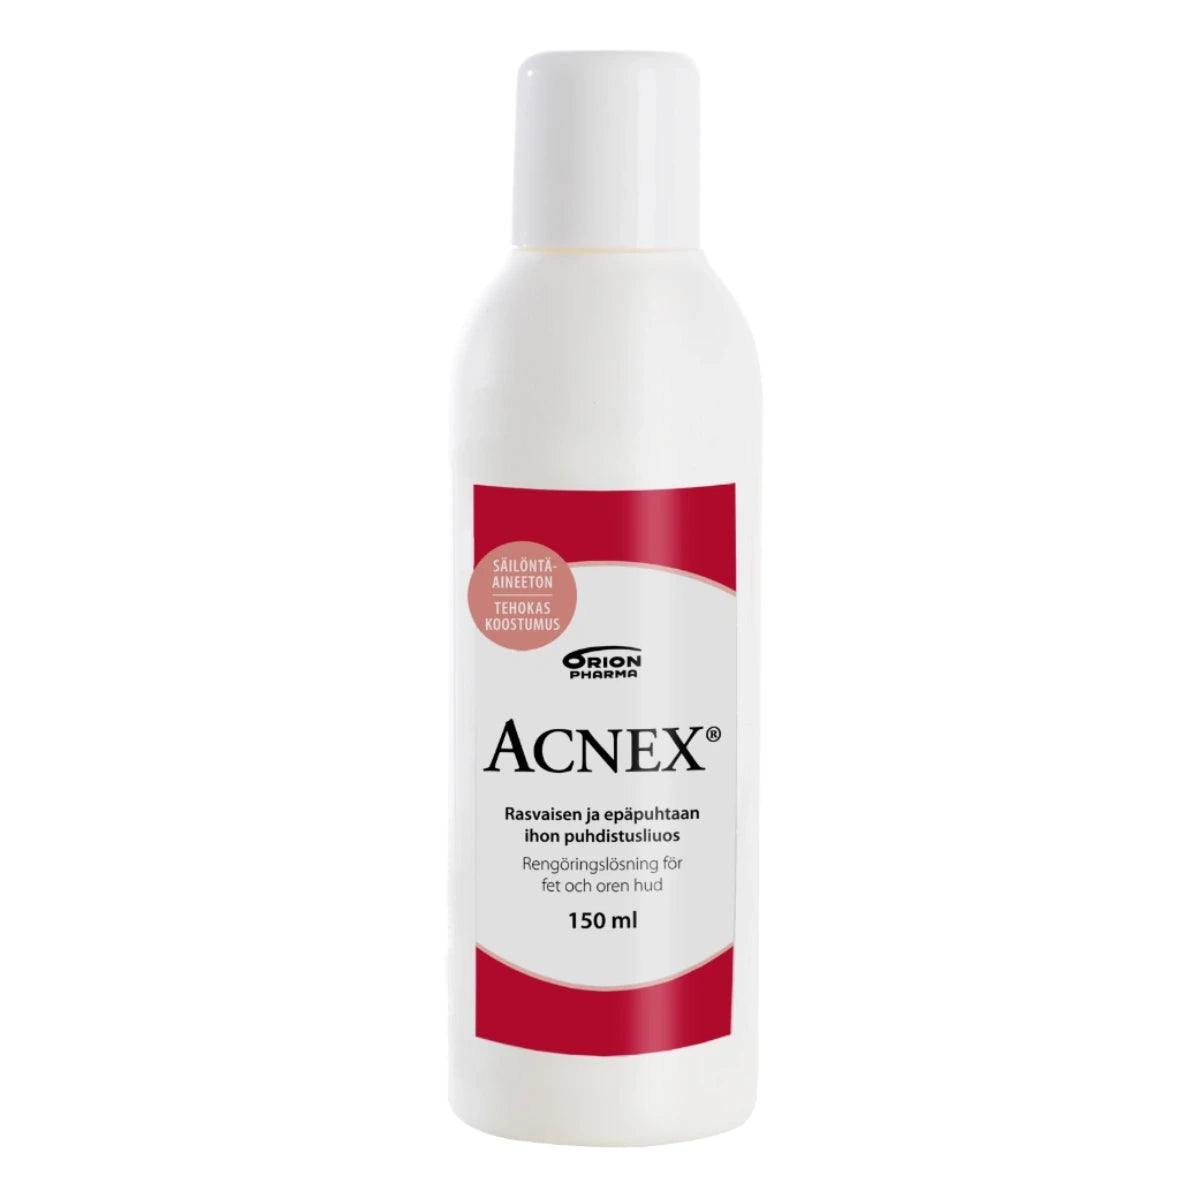 ACNEX Puhdistusliuos 150 ml rasvaisen ja epäpuhtaan ihon puhdistusliuos